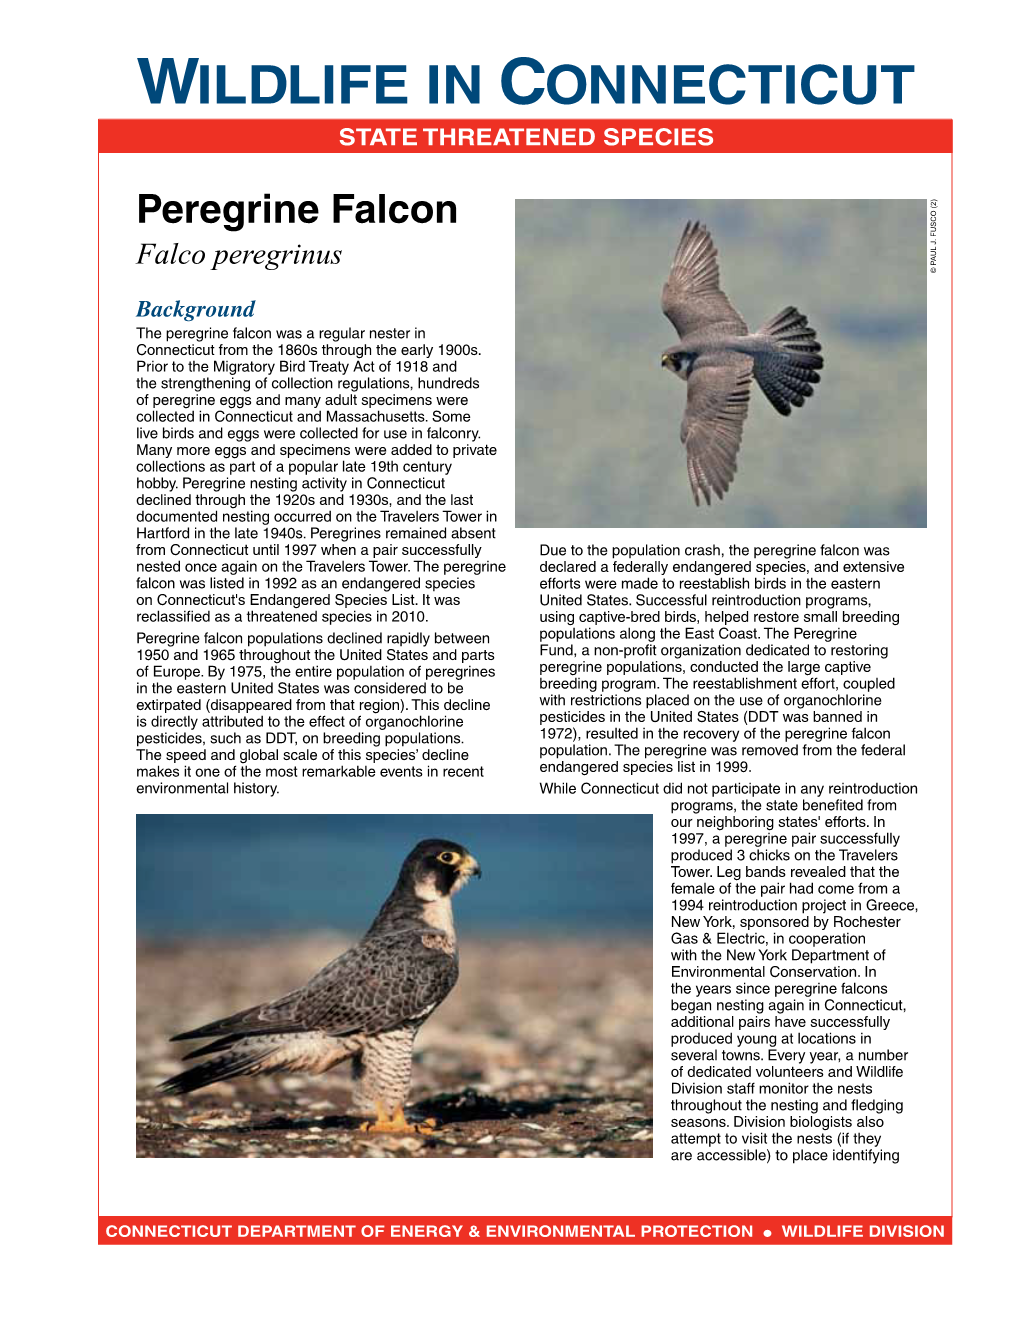 Peregrine Falcon Fact Sheet